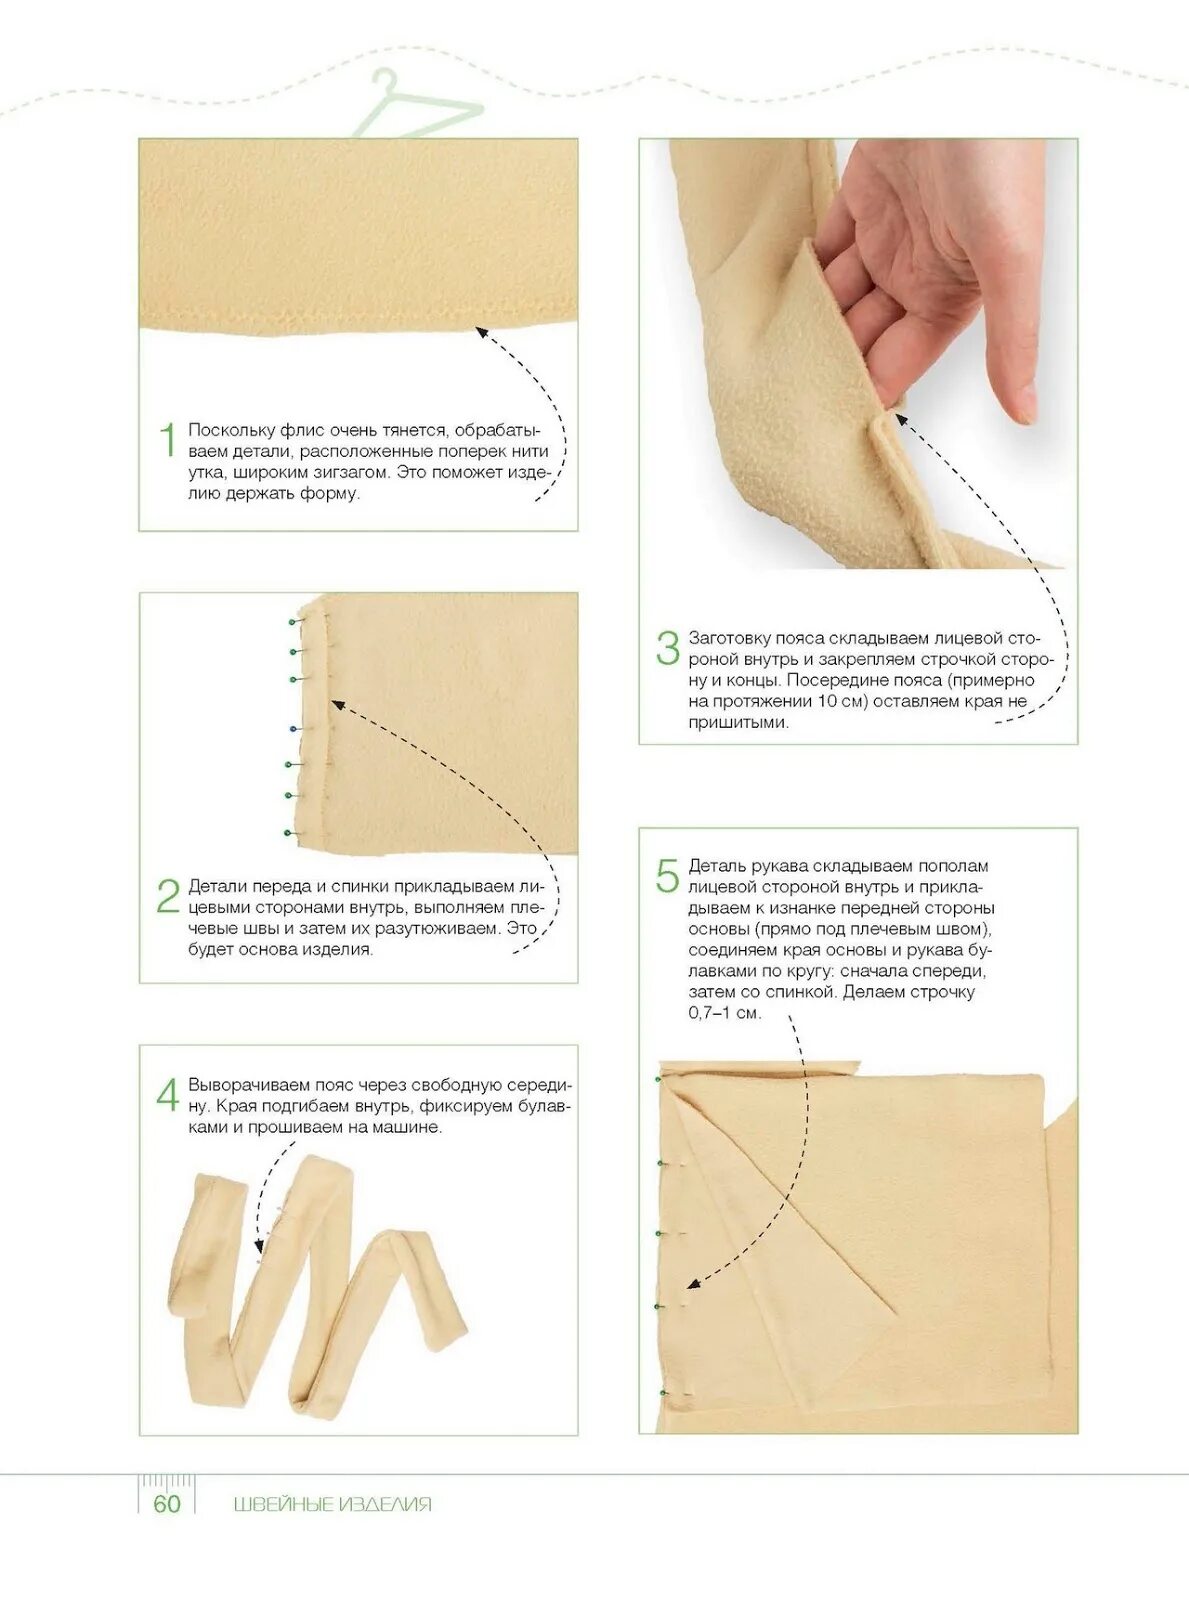 Швейные уроки для начинающих. Основы ручного шитья для начинающих. Учебное пособие по пошиву для новичков. Самоучитель кройки и шитья.